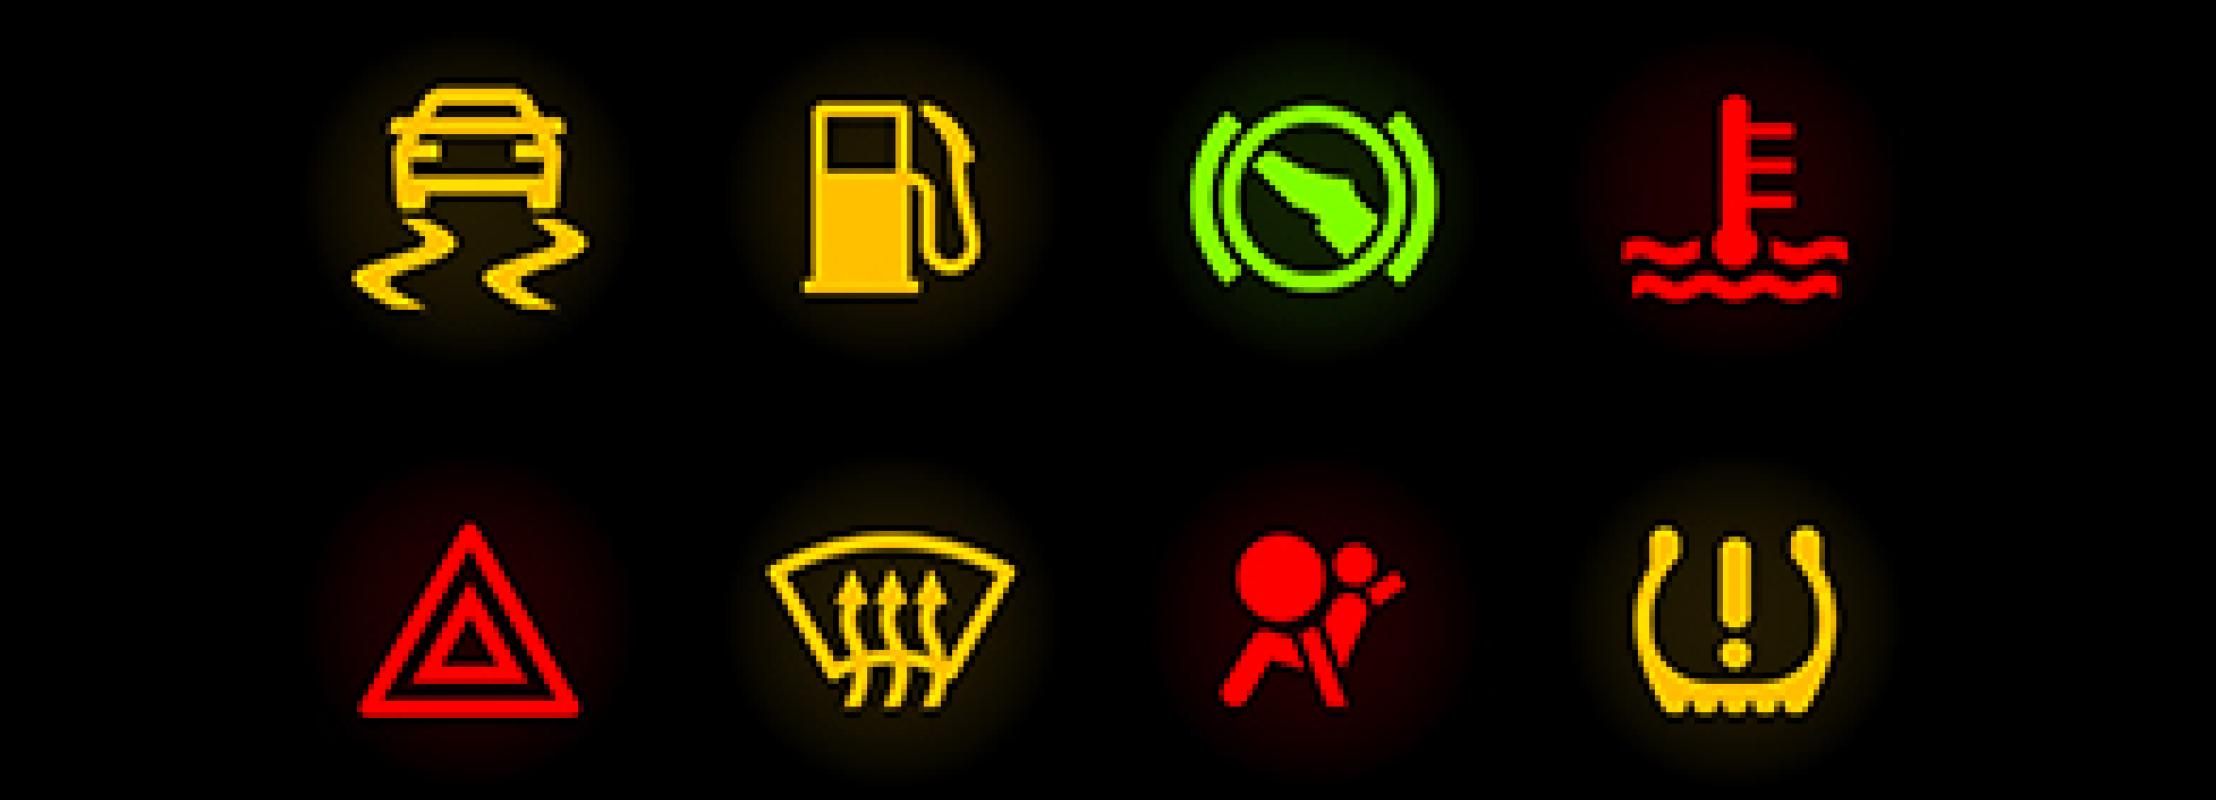 Кнопки в автомобиле и их значение: Кнопки управления в автомобиле — обозначения